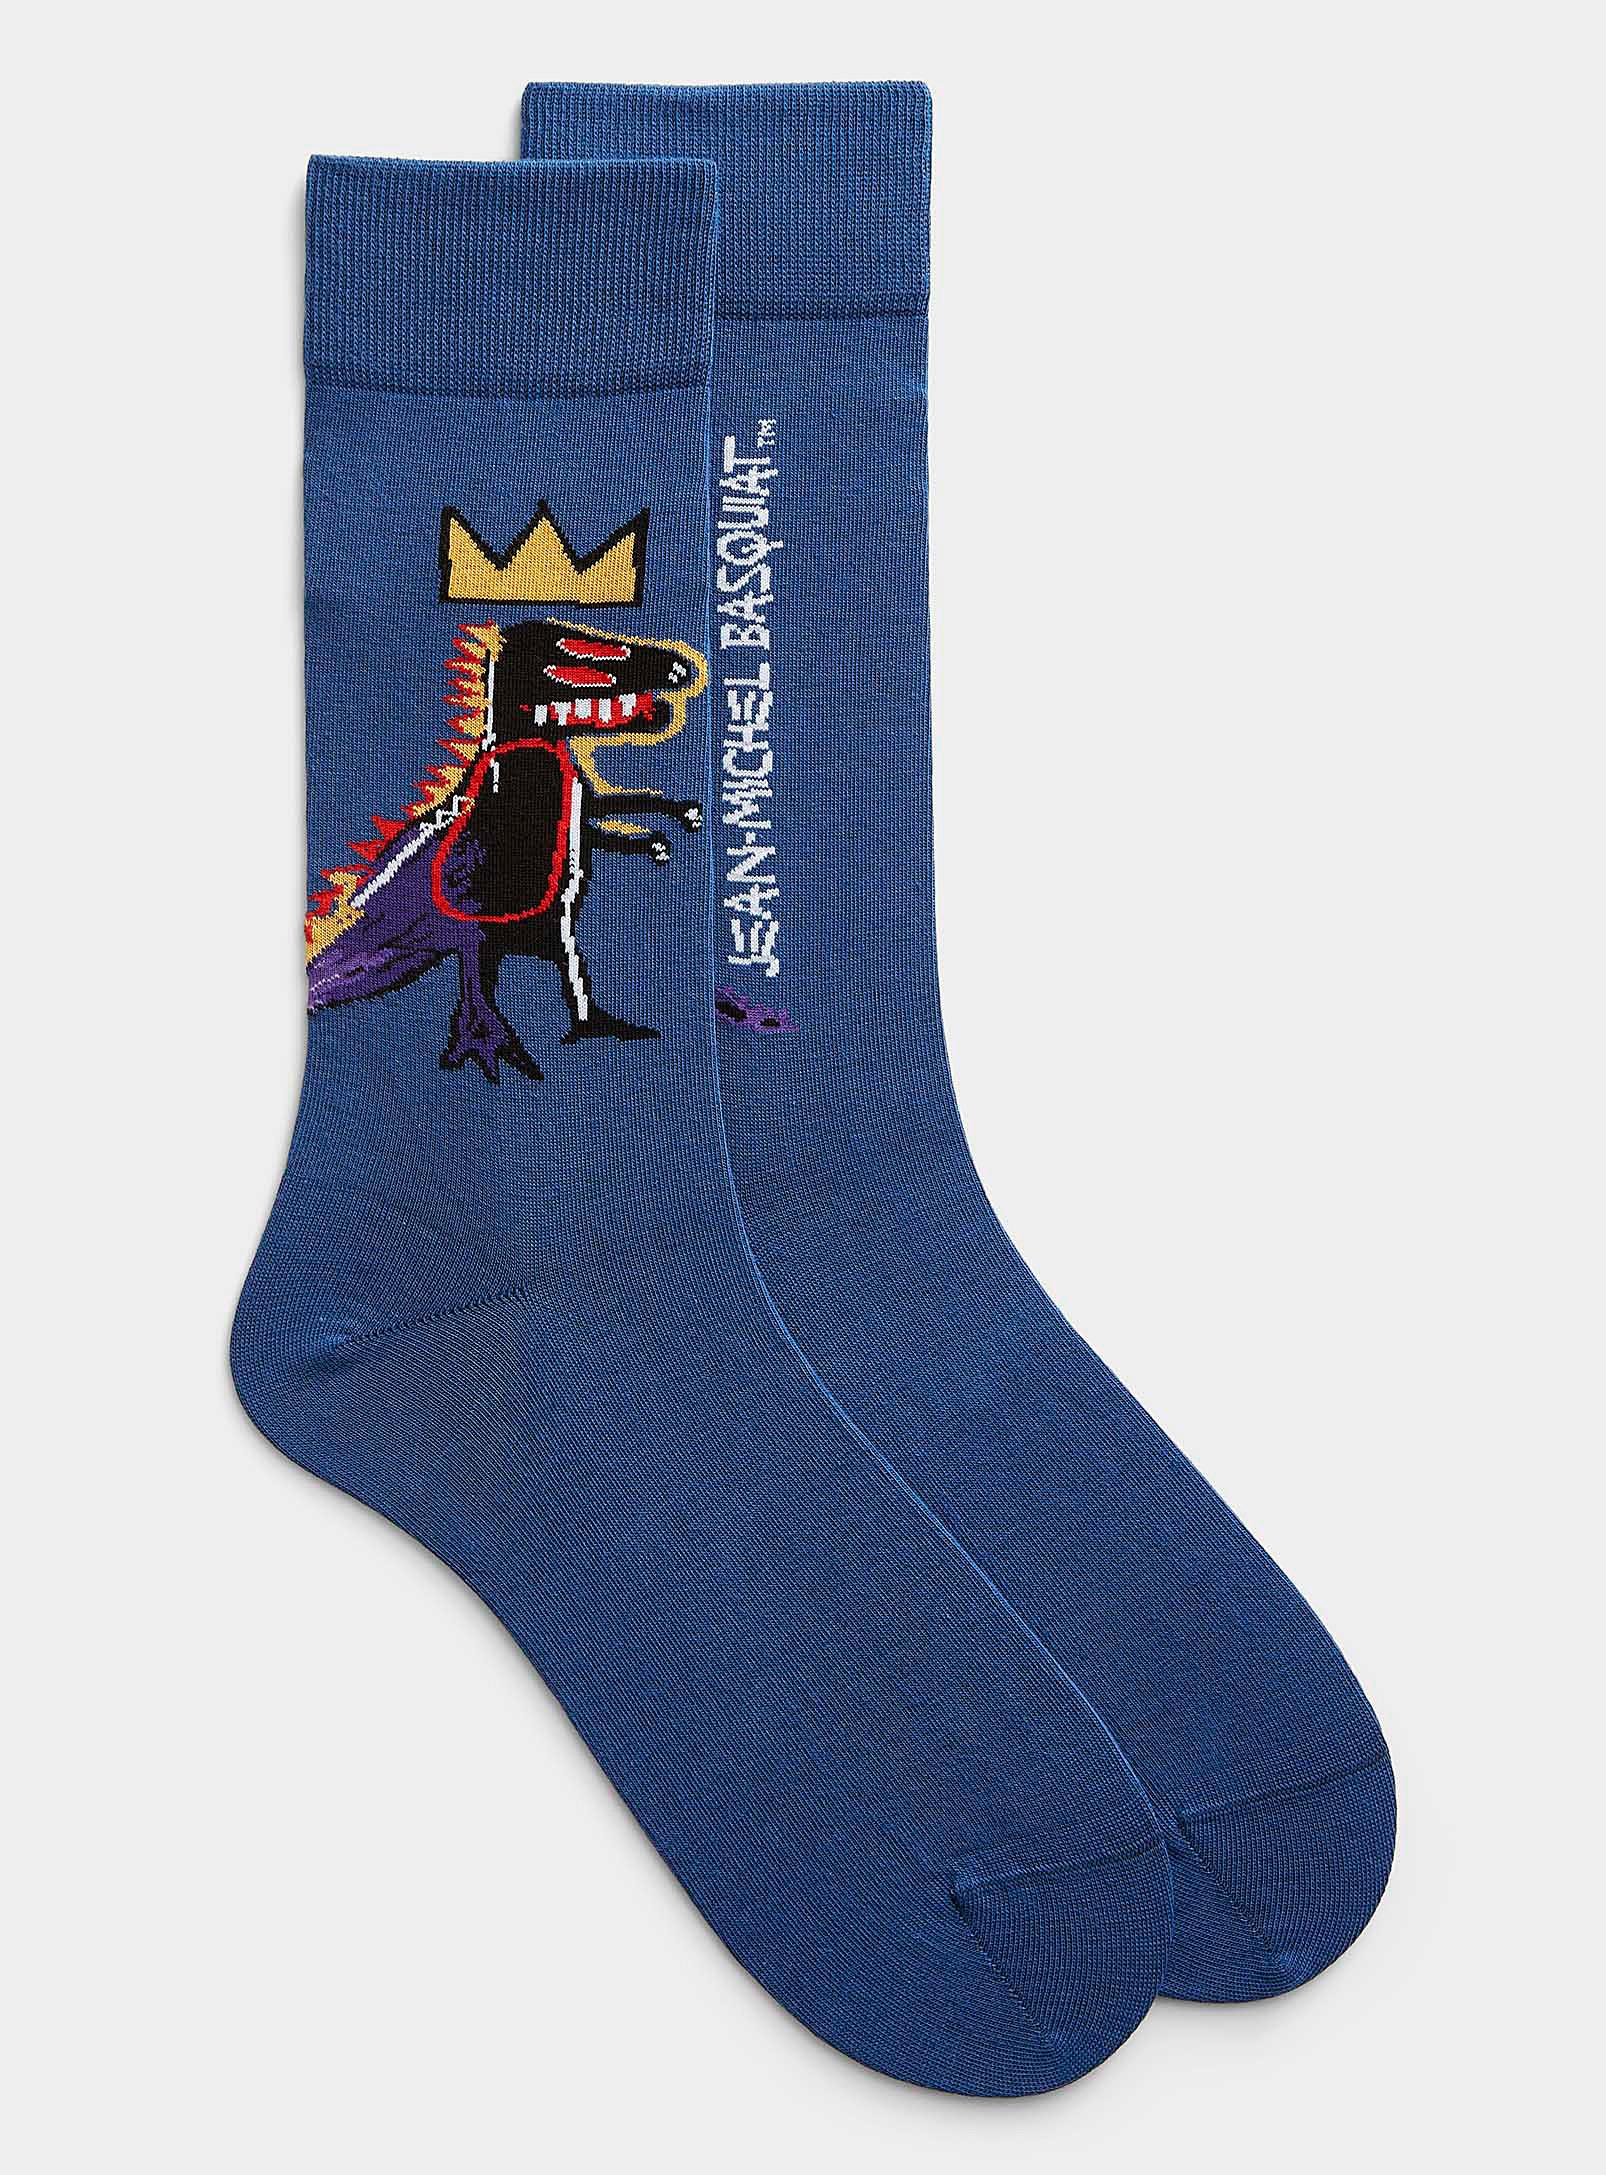 Jimmy Lion Basquiat Pez Dispenser Socks in Blue for Men | Lyst